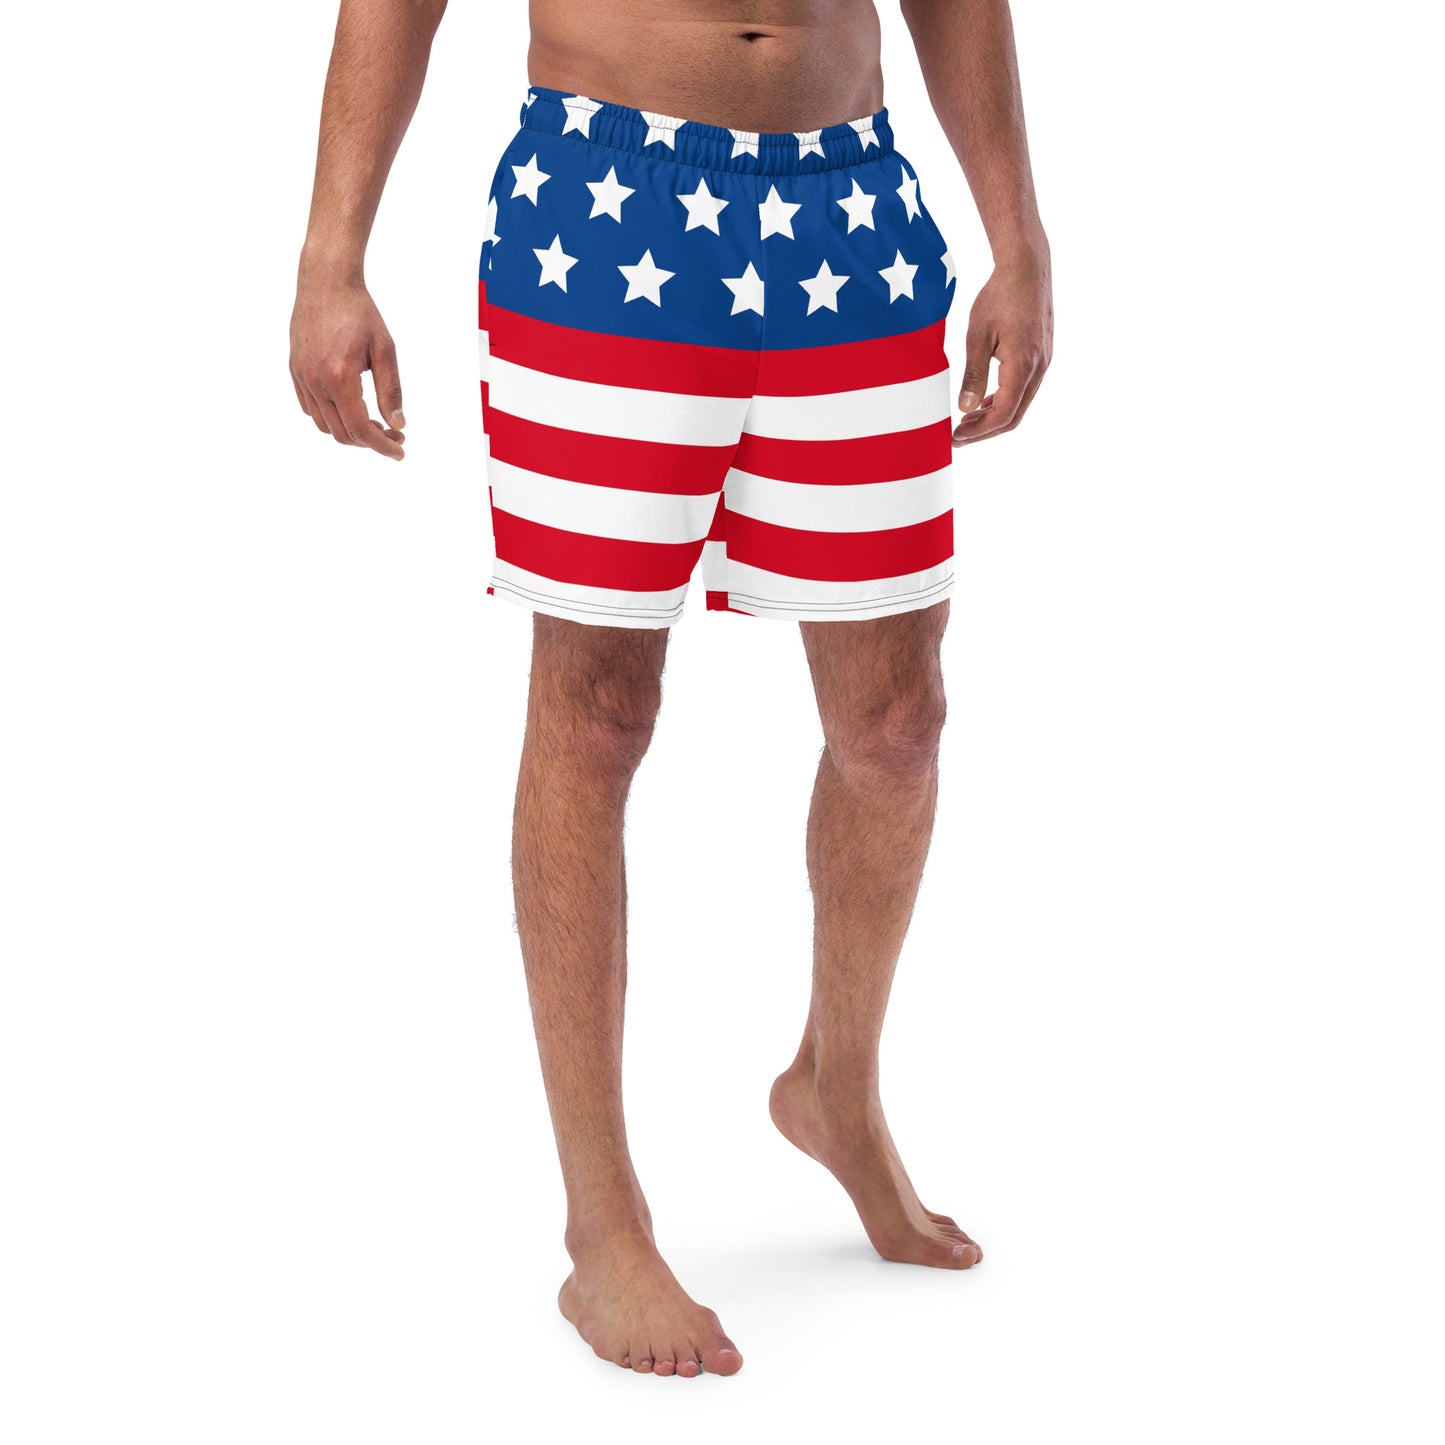 Men's Danciu Enterprises American swim trunks